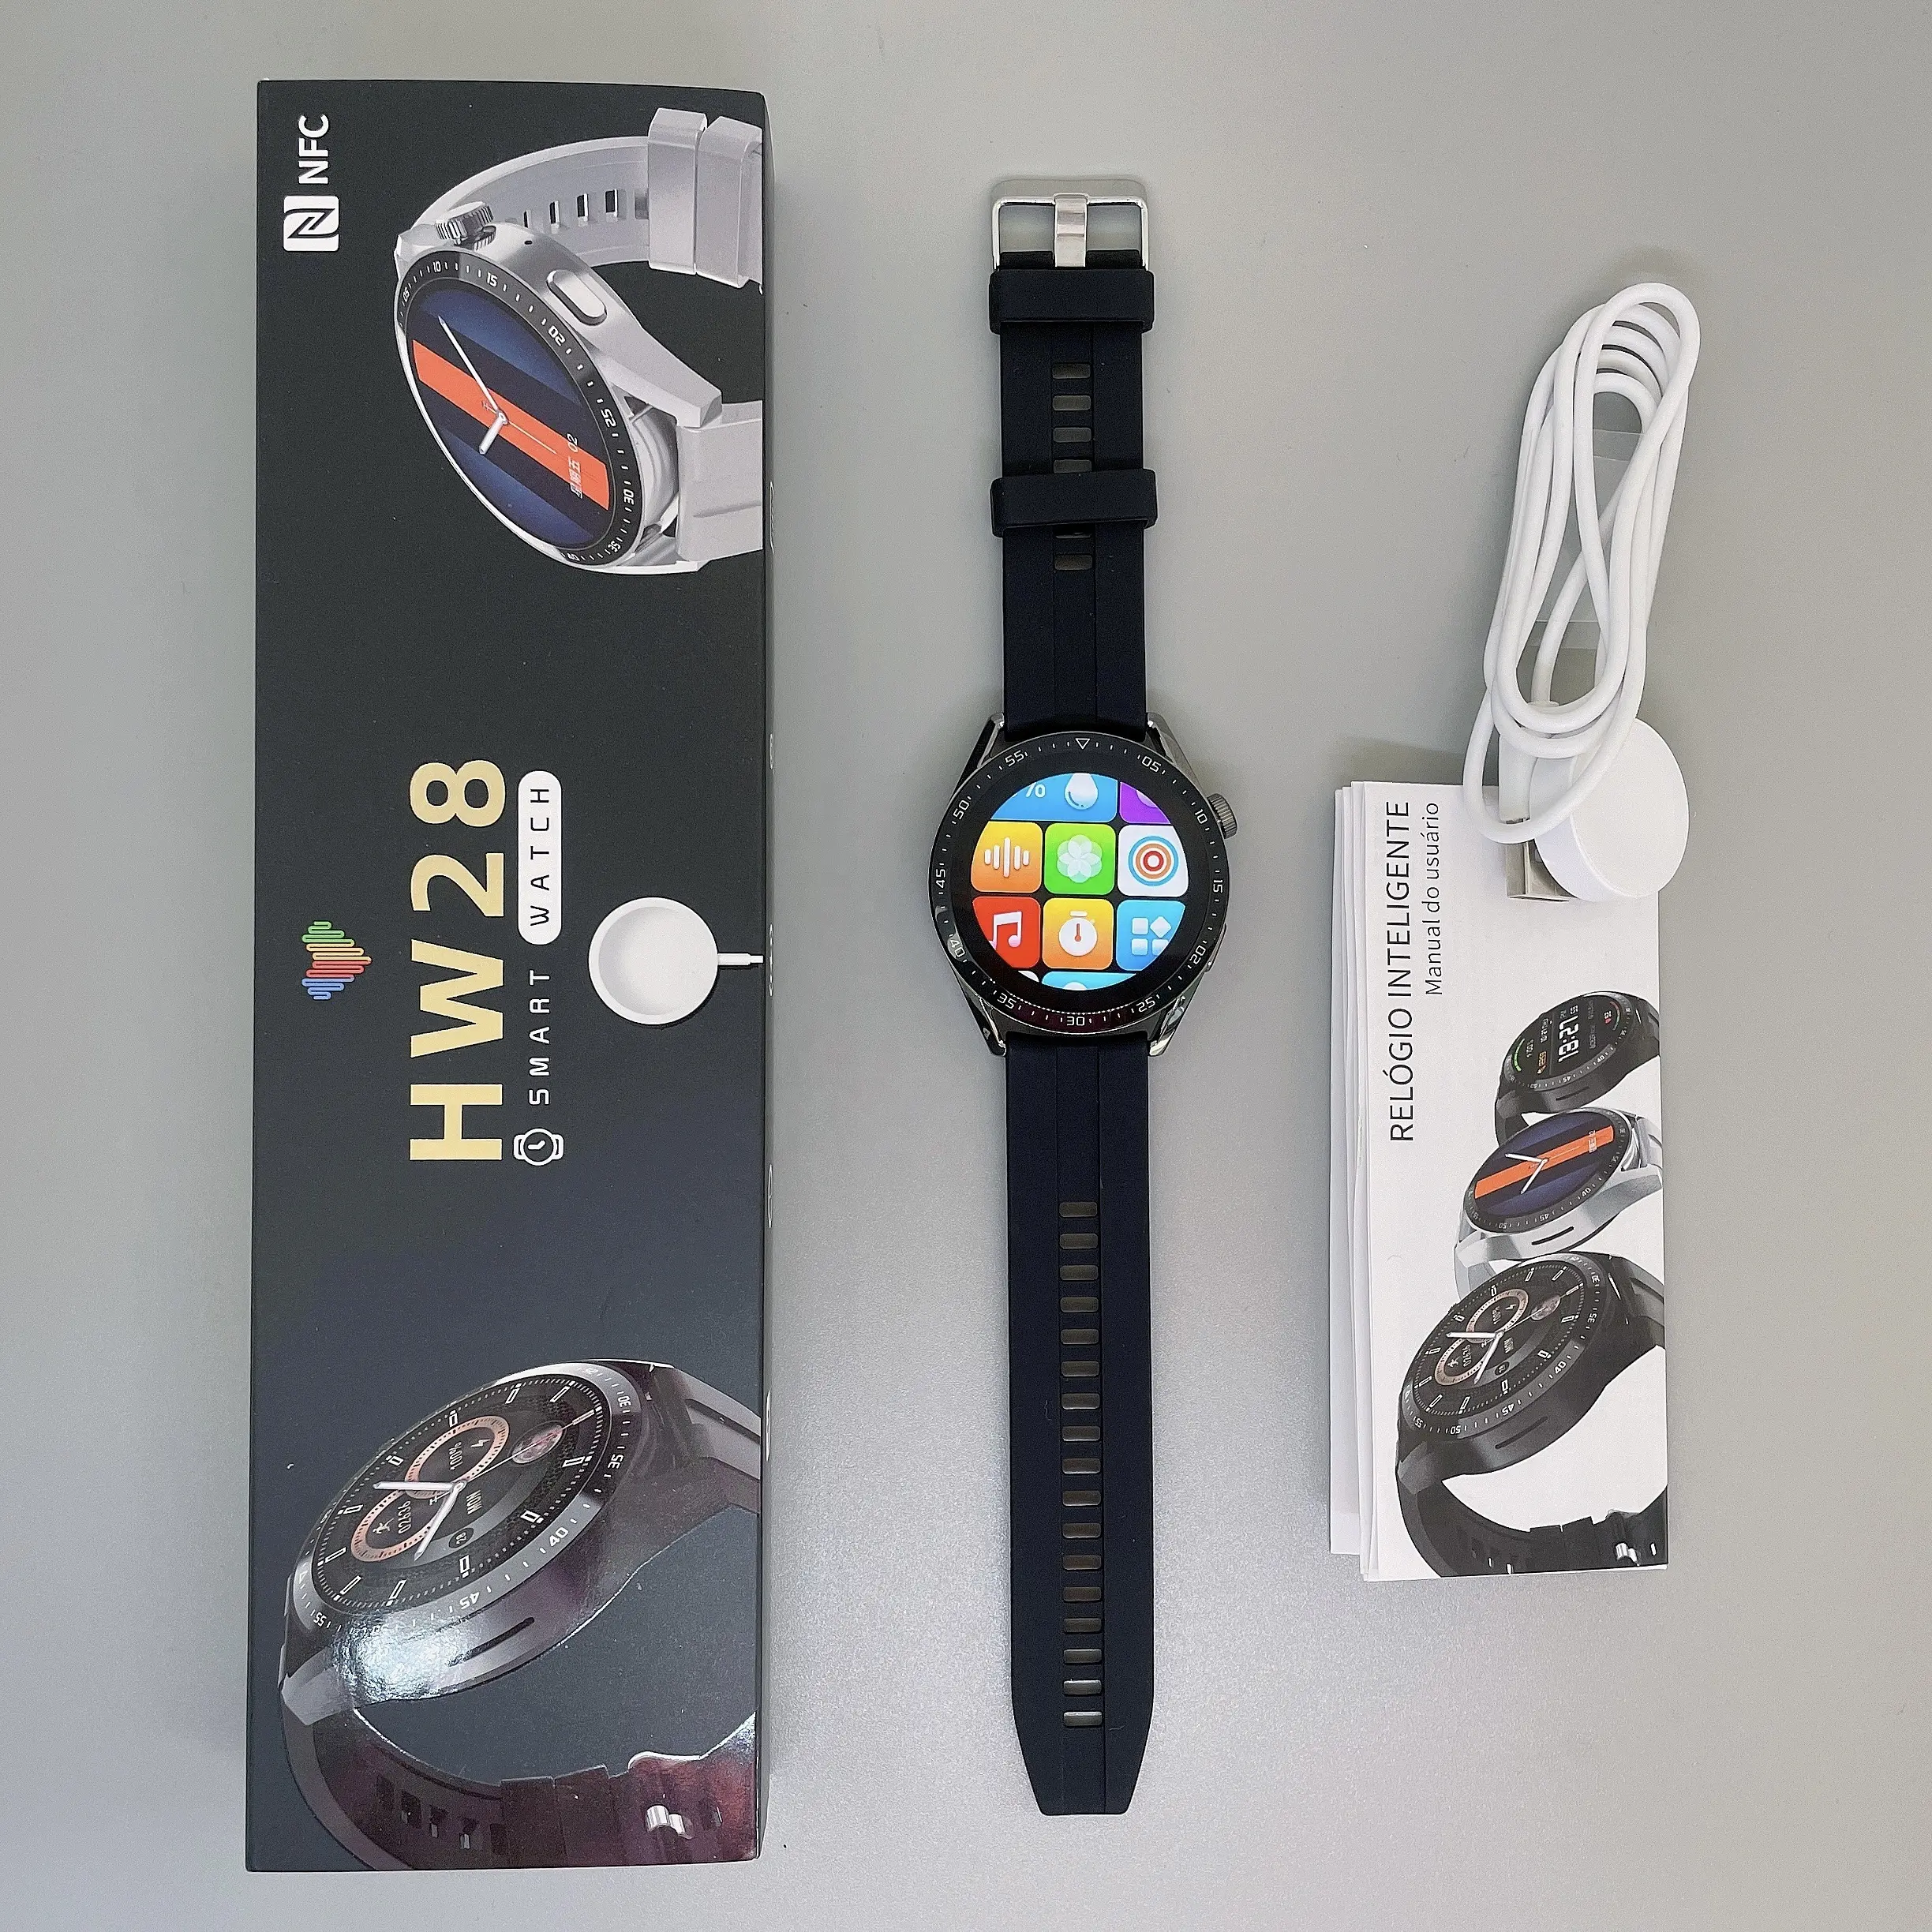 Smart watch hw28 NFC posizione di pagamento Offline condividi Smart orologio indossabile elettronica uomo donna indossa per IOS Android phone